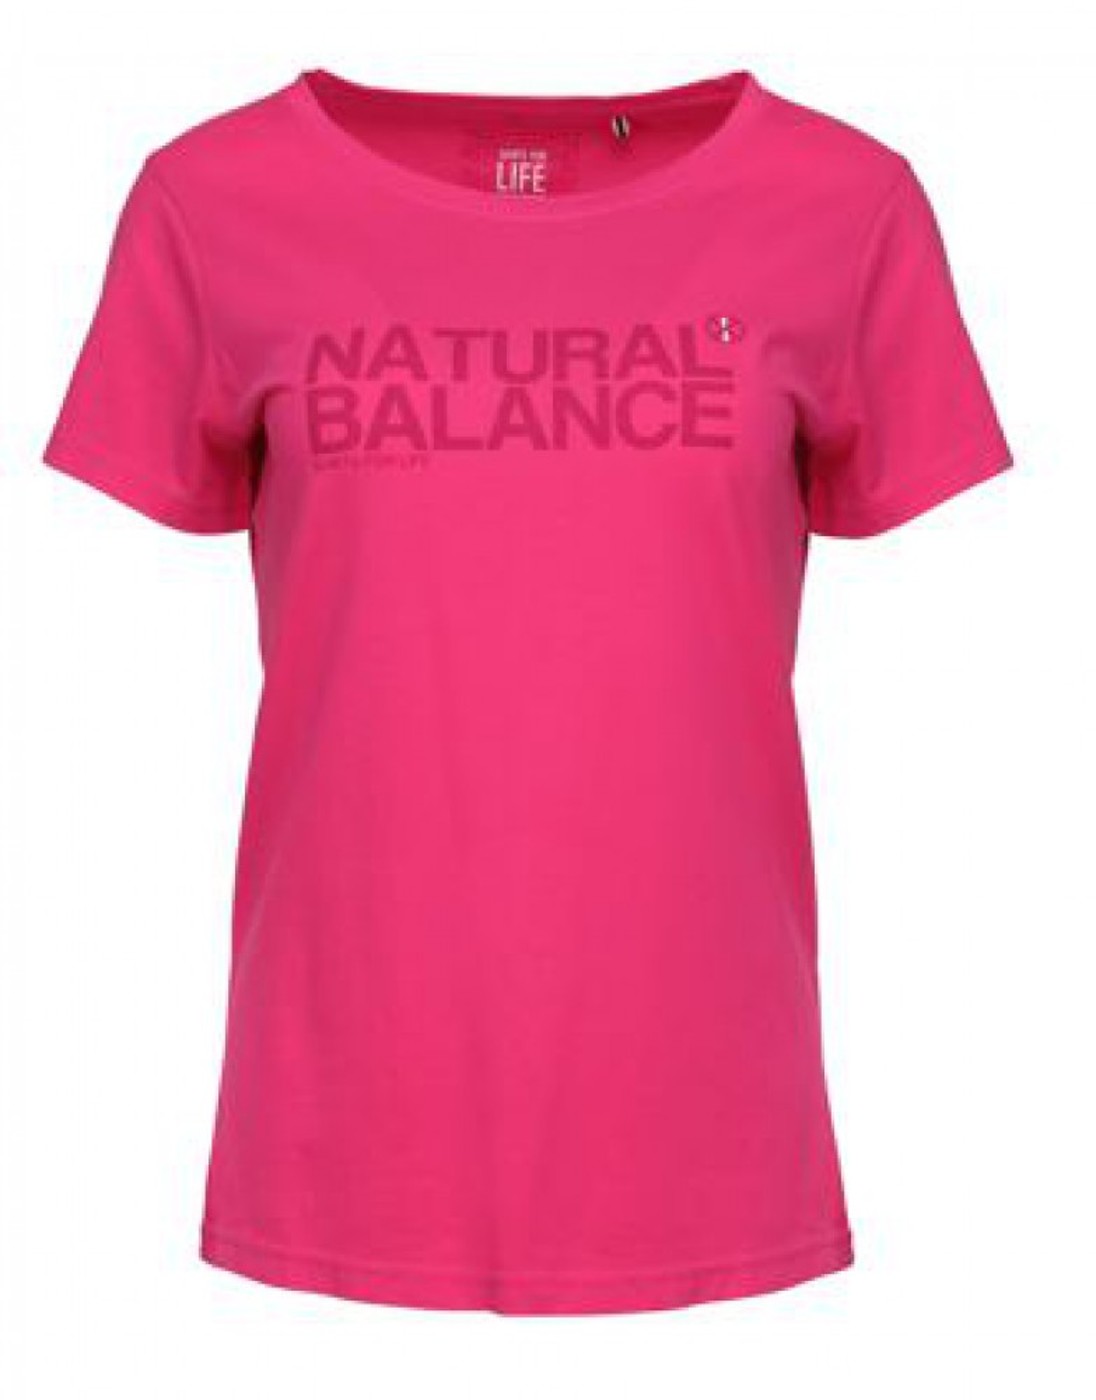 SHIRTS FOR LIFE T-Shirt Sarah Natural Balance - Damen